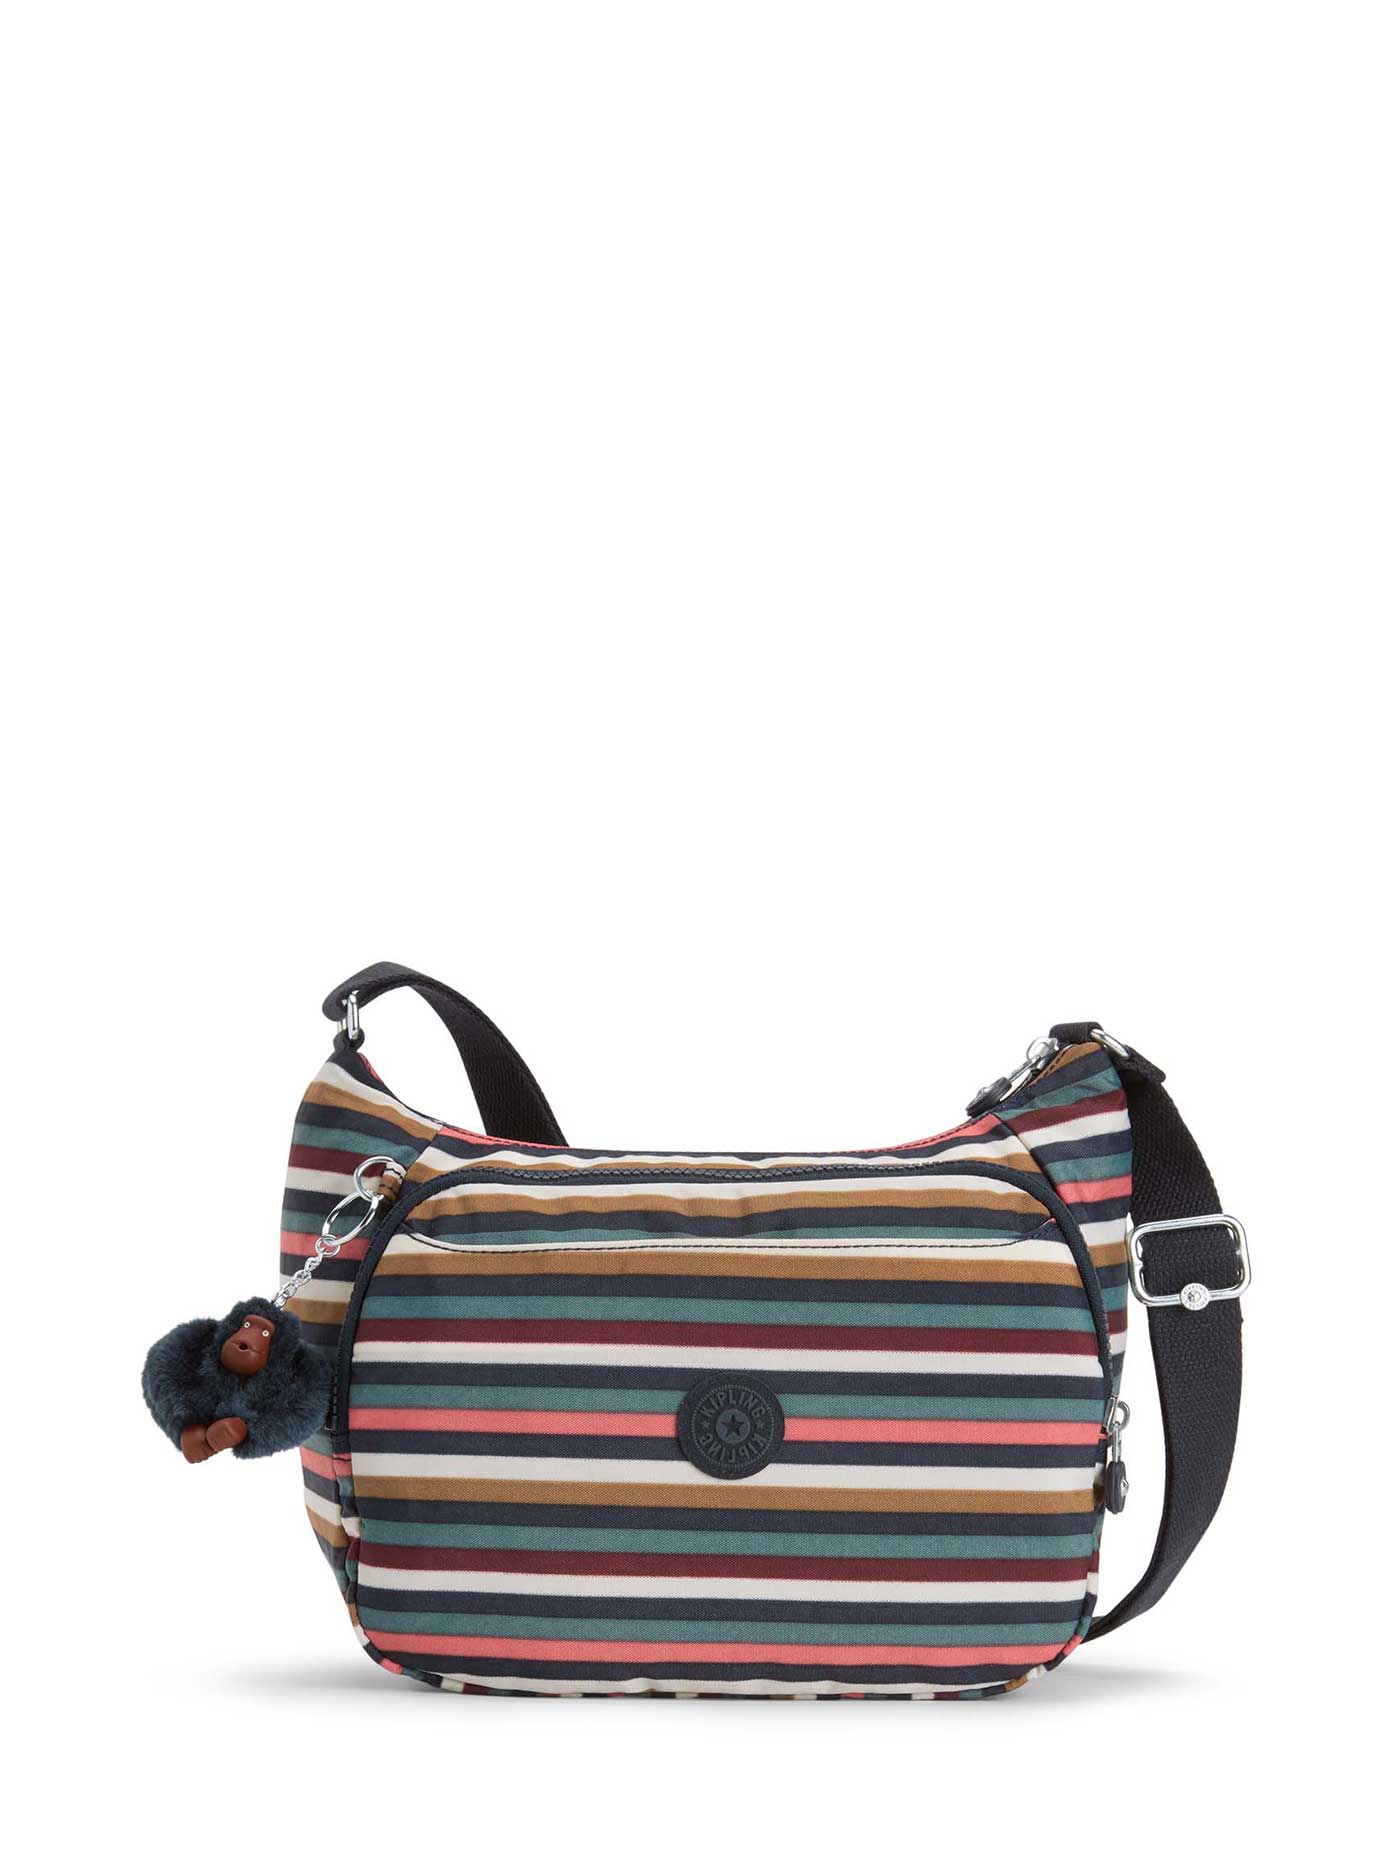 KIPLING Cai Shoulder Bag Multi Stripes | Central.co.th